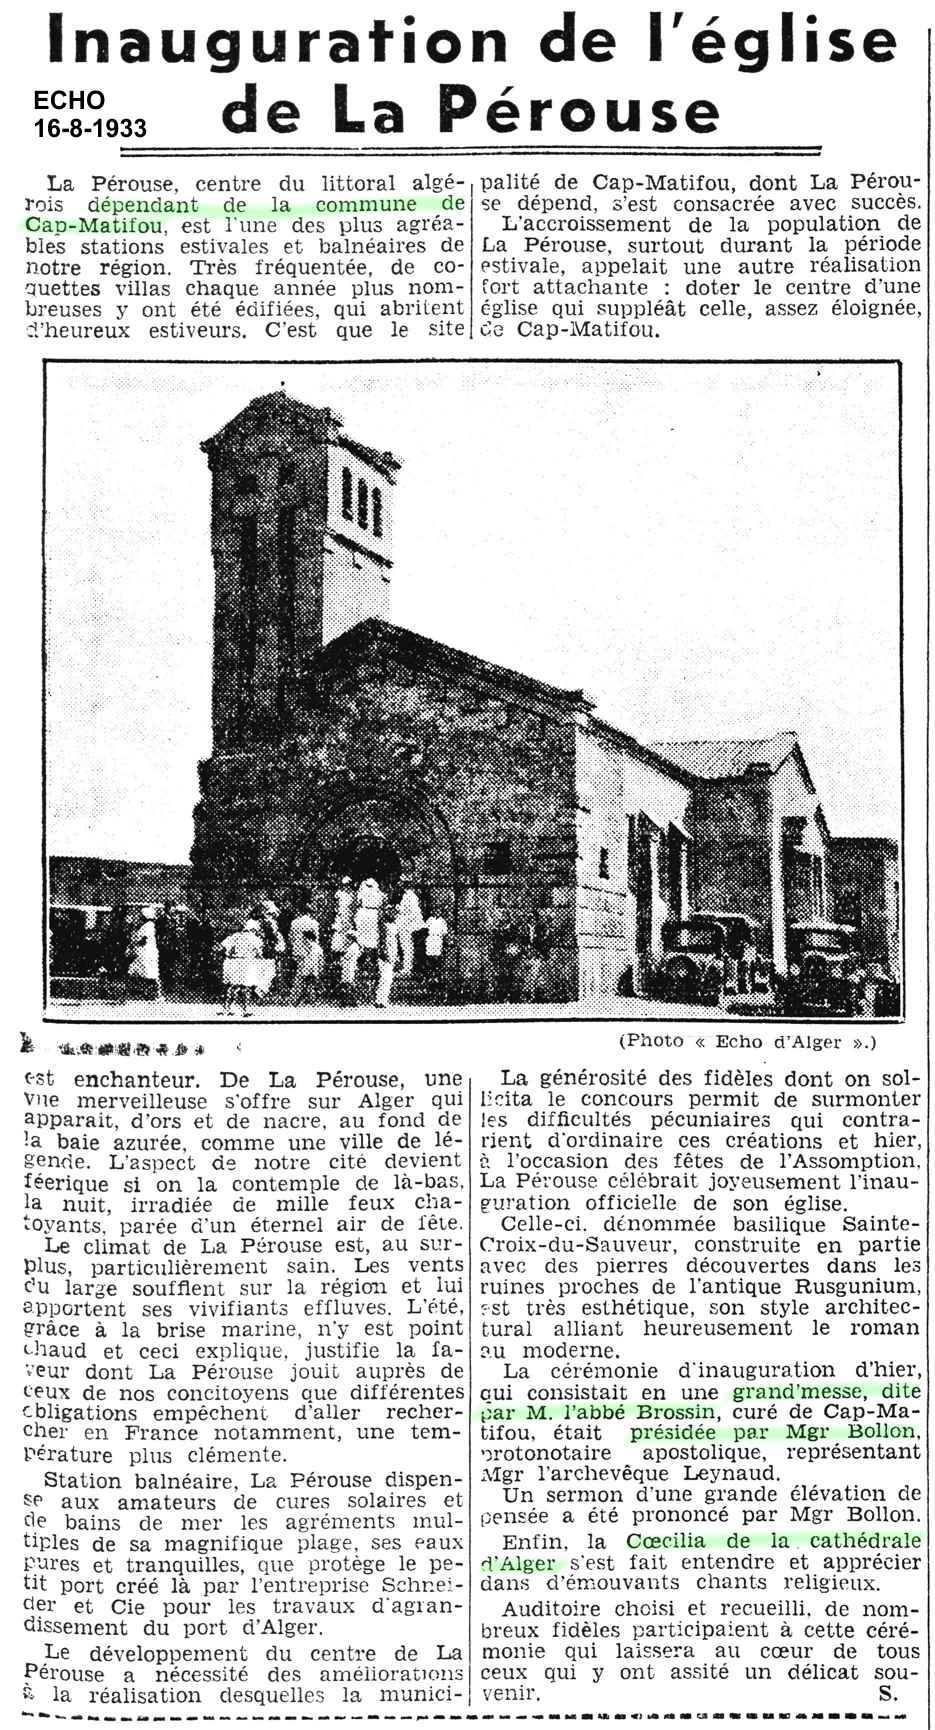 Inauguration de l'église de La Pérouse